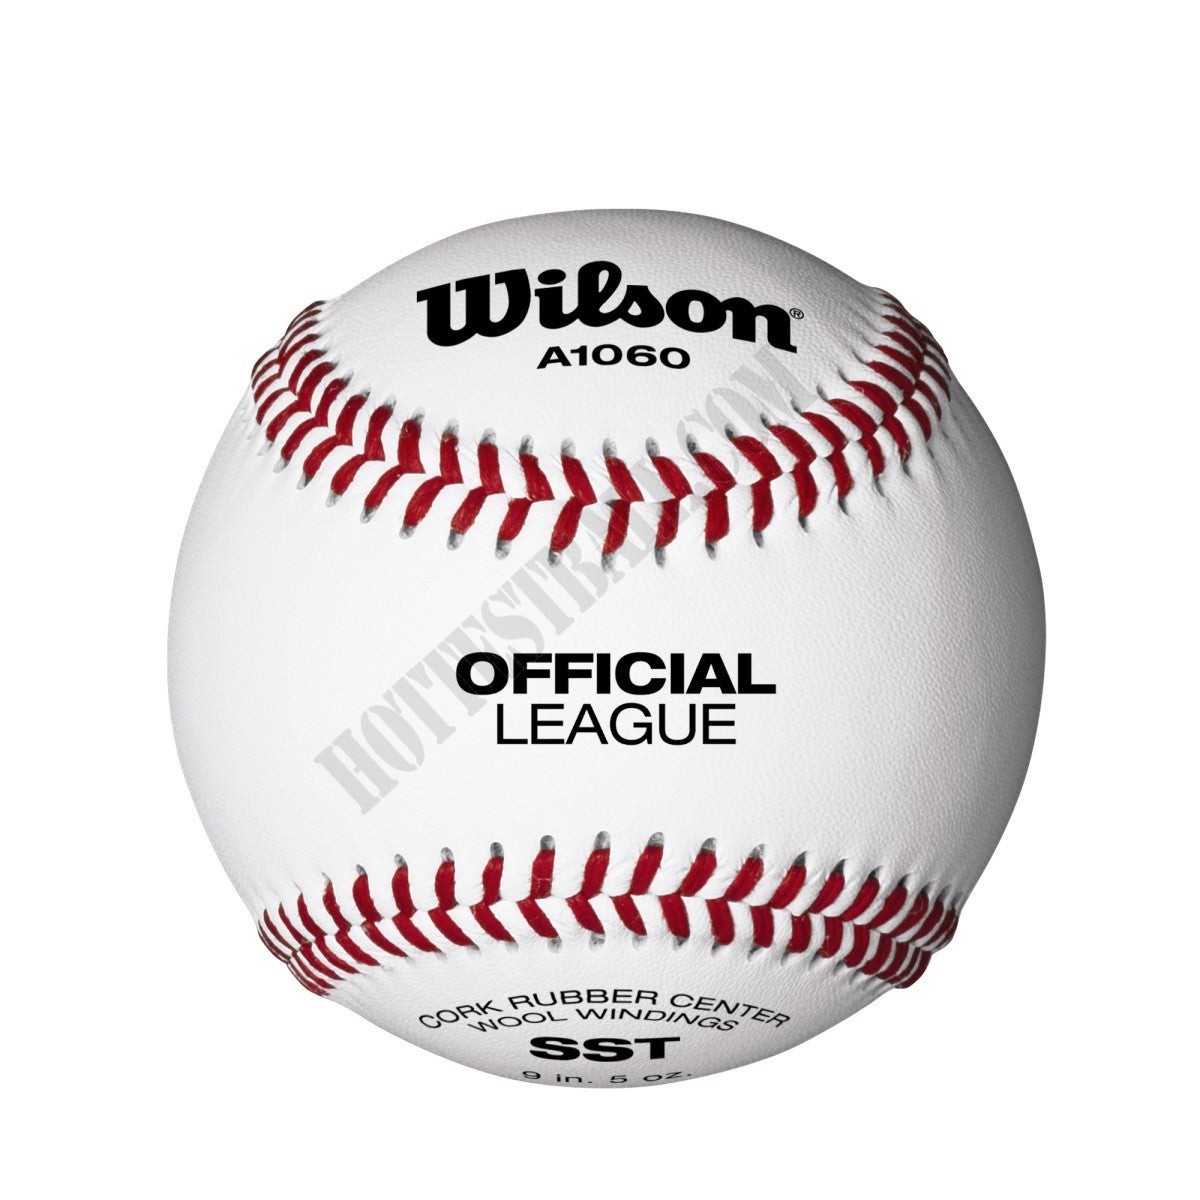 A1060 Official League SST Baseballs - Wilson Discount Store - A1060 Official League SST Baseballs - Wilson Discount Store